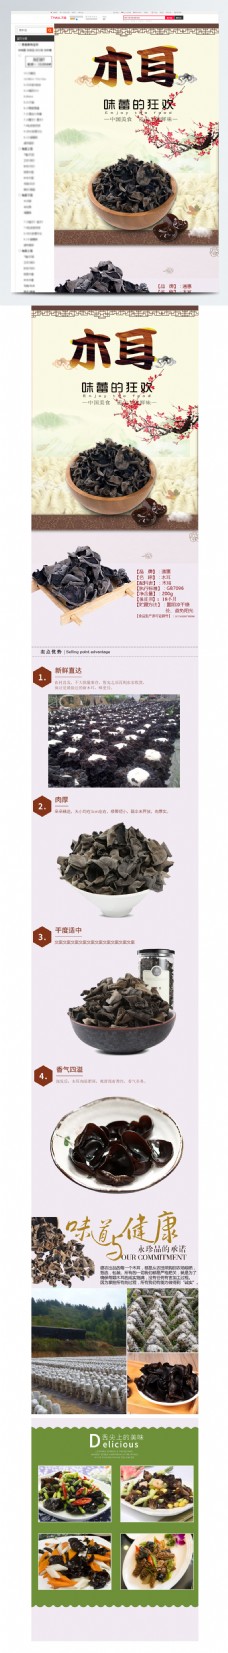 木耳干货食品中国风详情页模板源文件